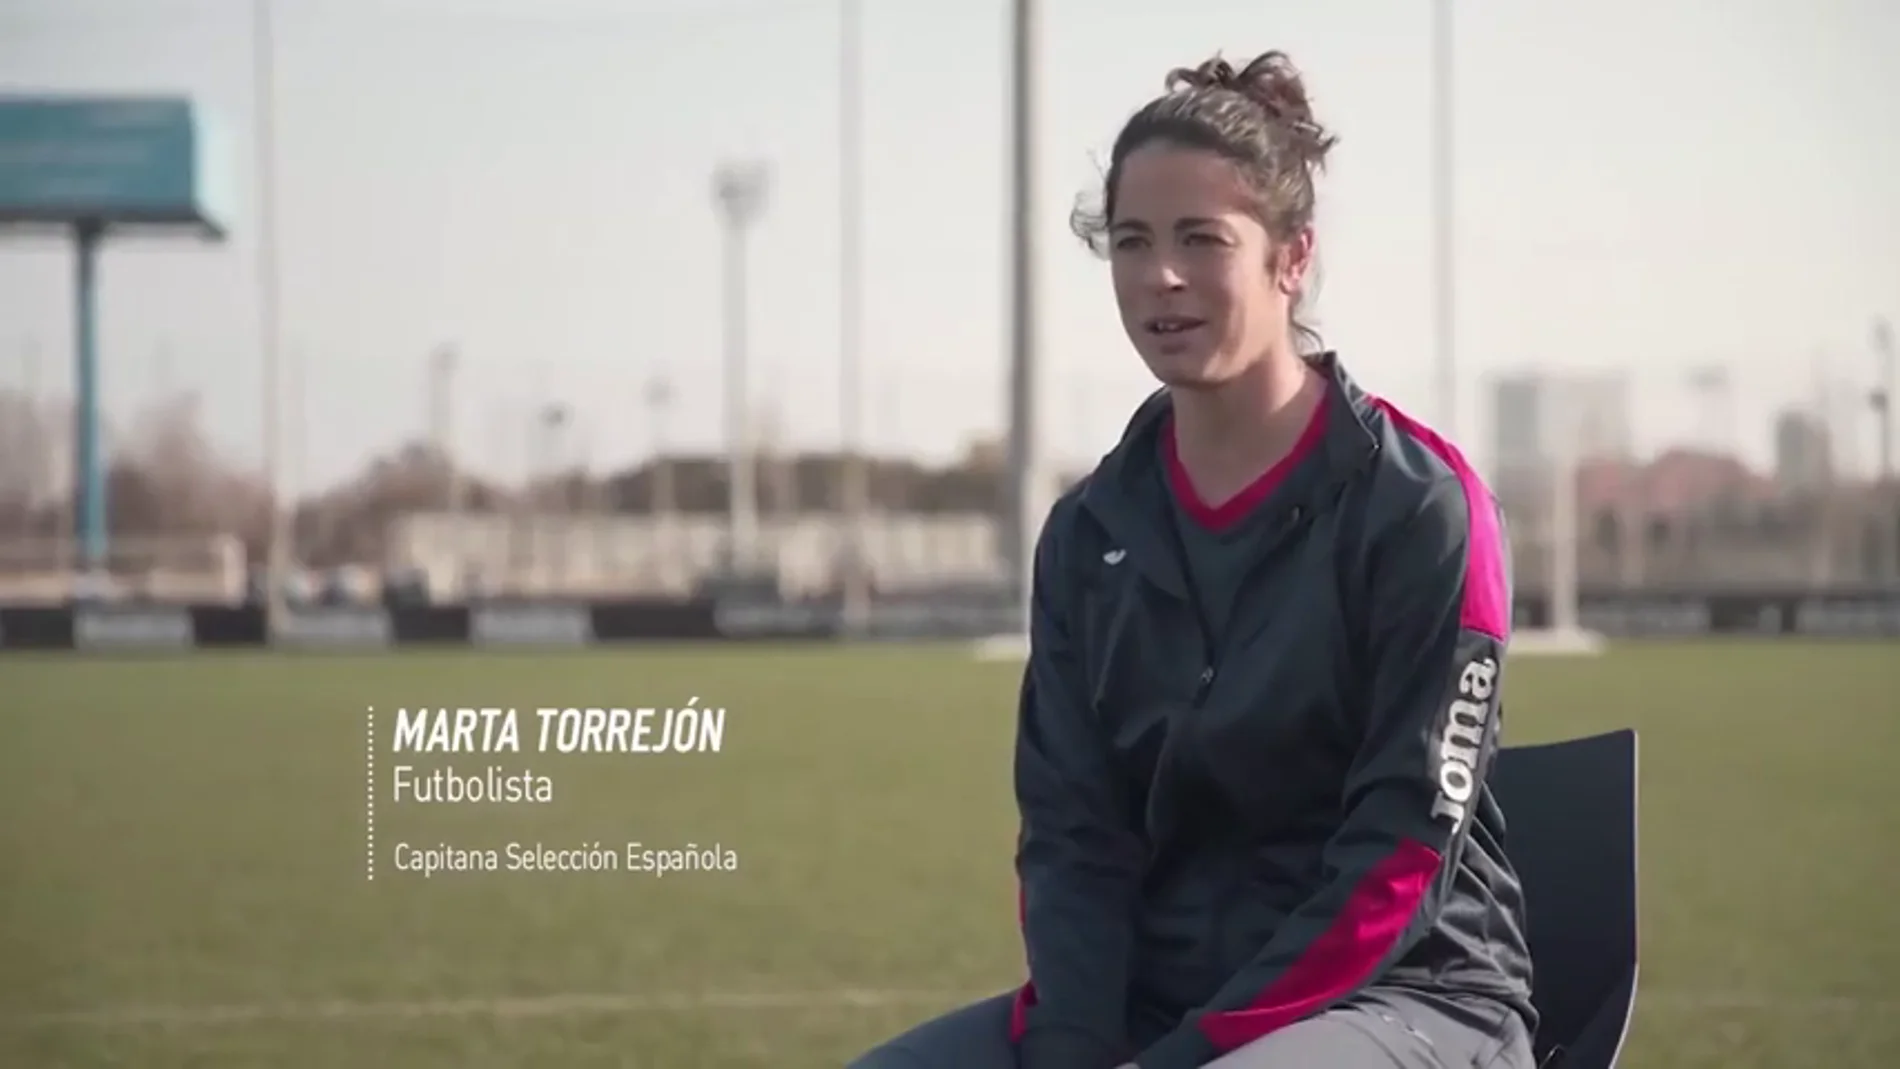 Las deportistas españolas protagonizan la campaña de Joma por el Día de la Mujer: "Ojalá todos los días fueran noticia"